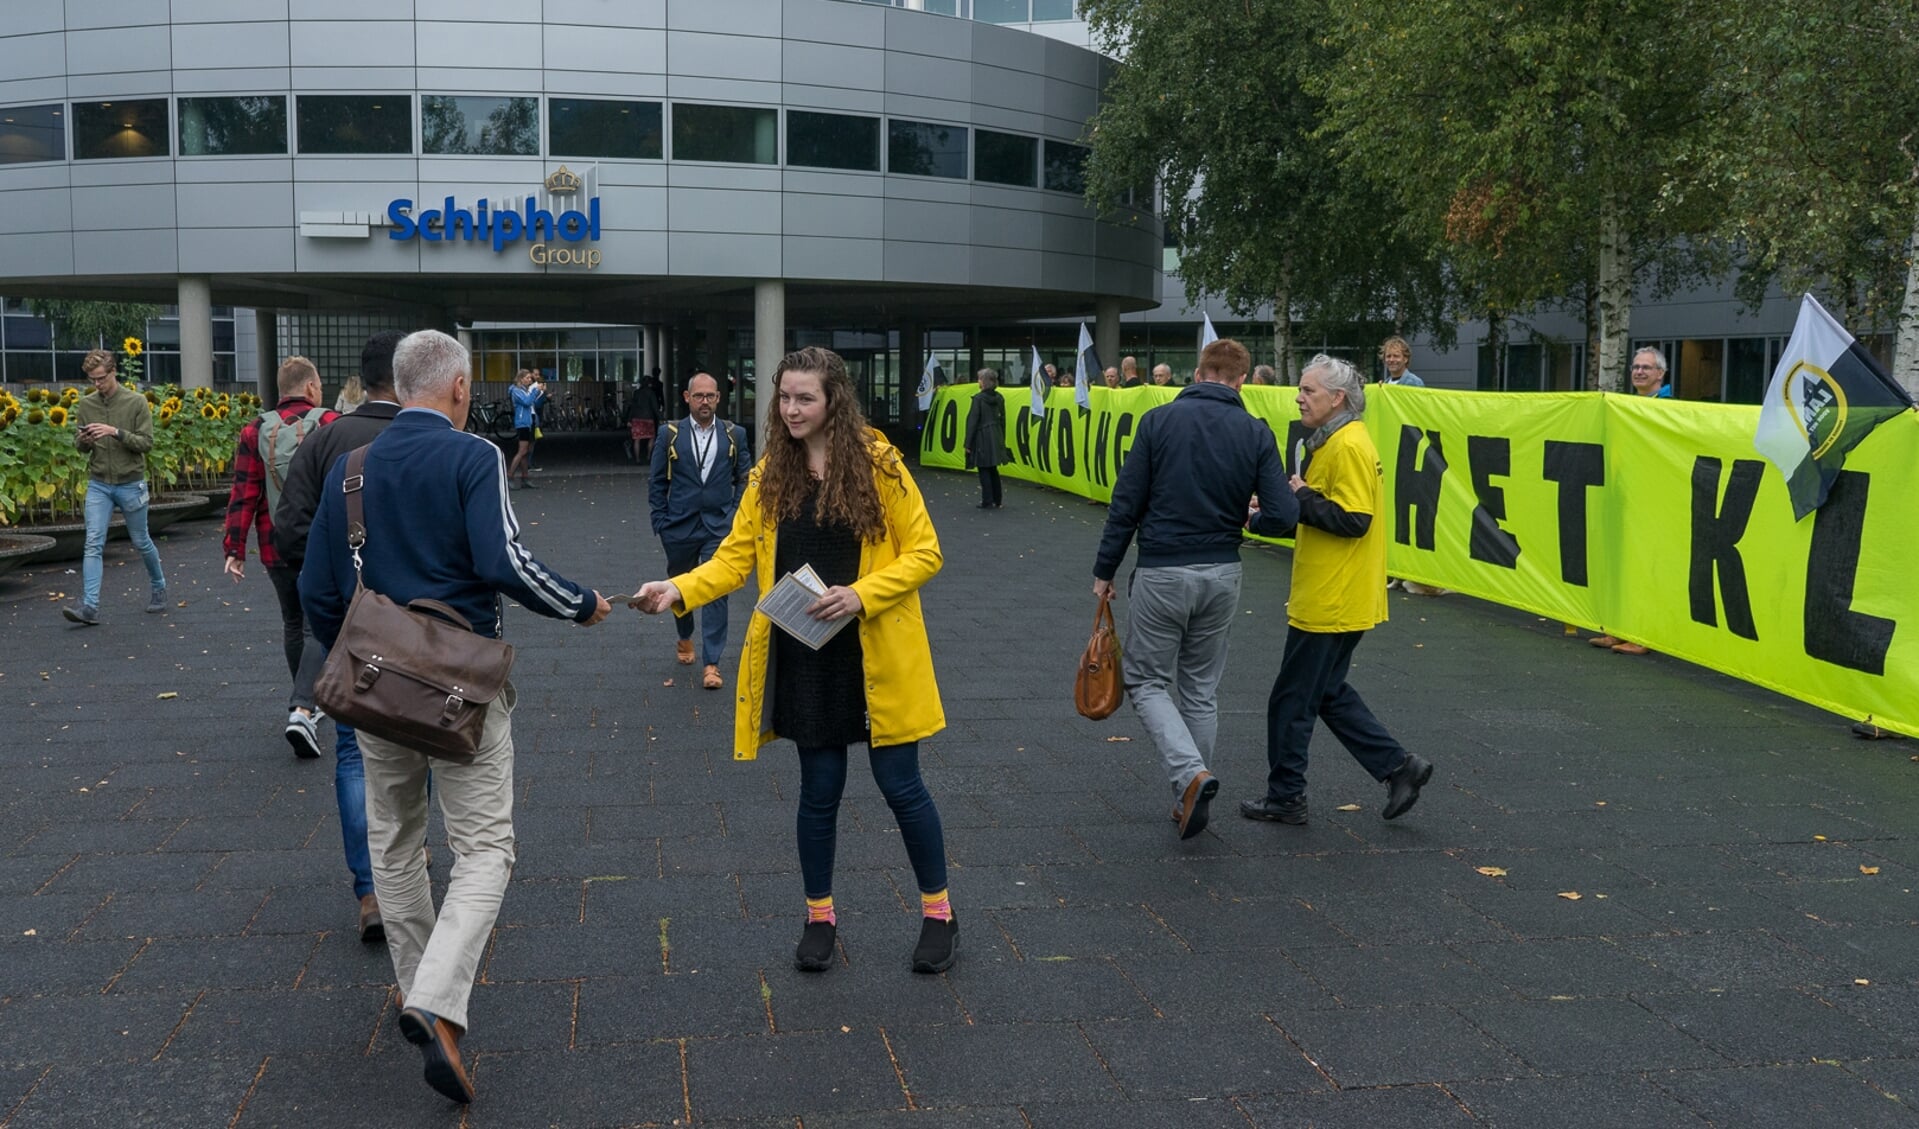 Greenpeace vraagt aandacht voor het klimaat voor de ingang van de Schiphol Group. 